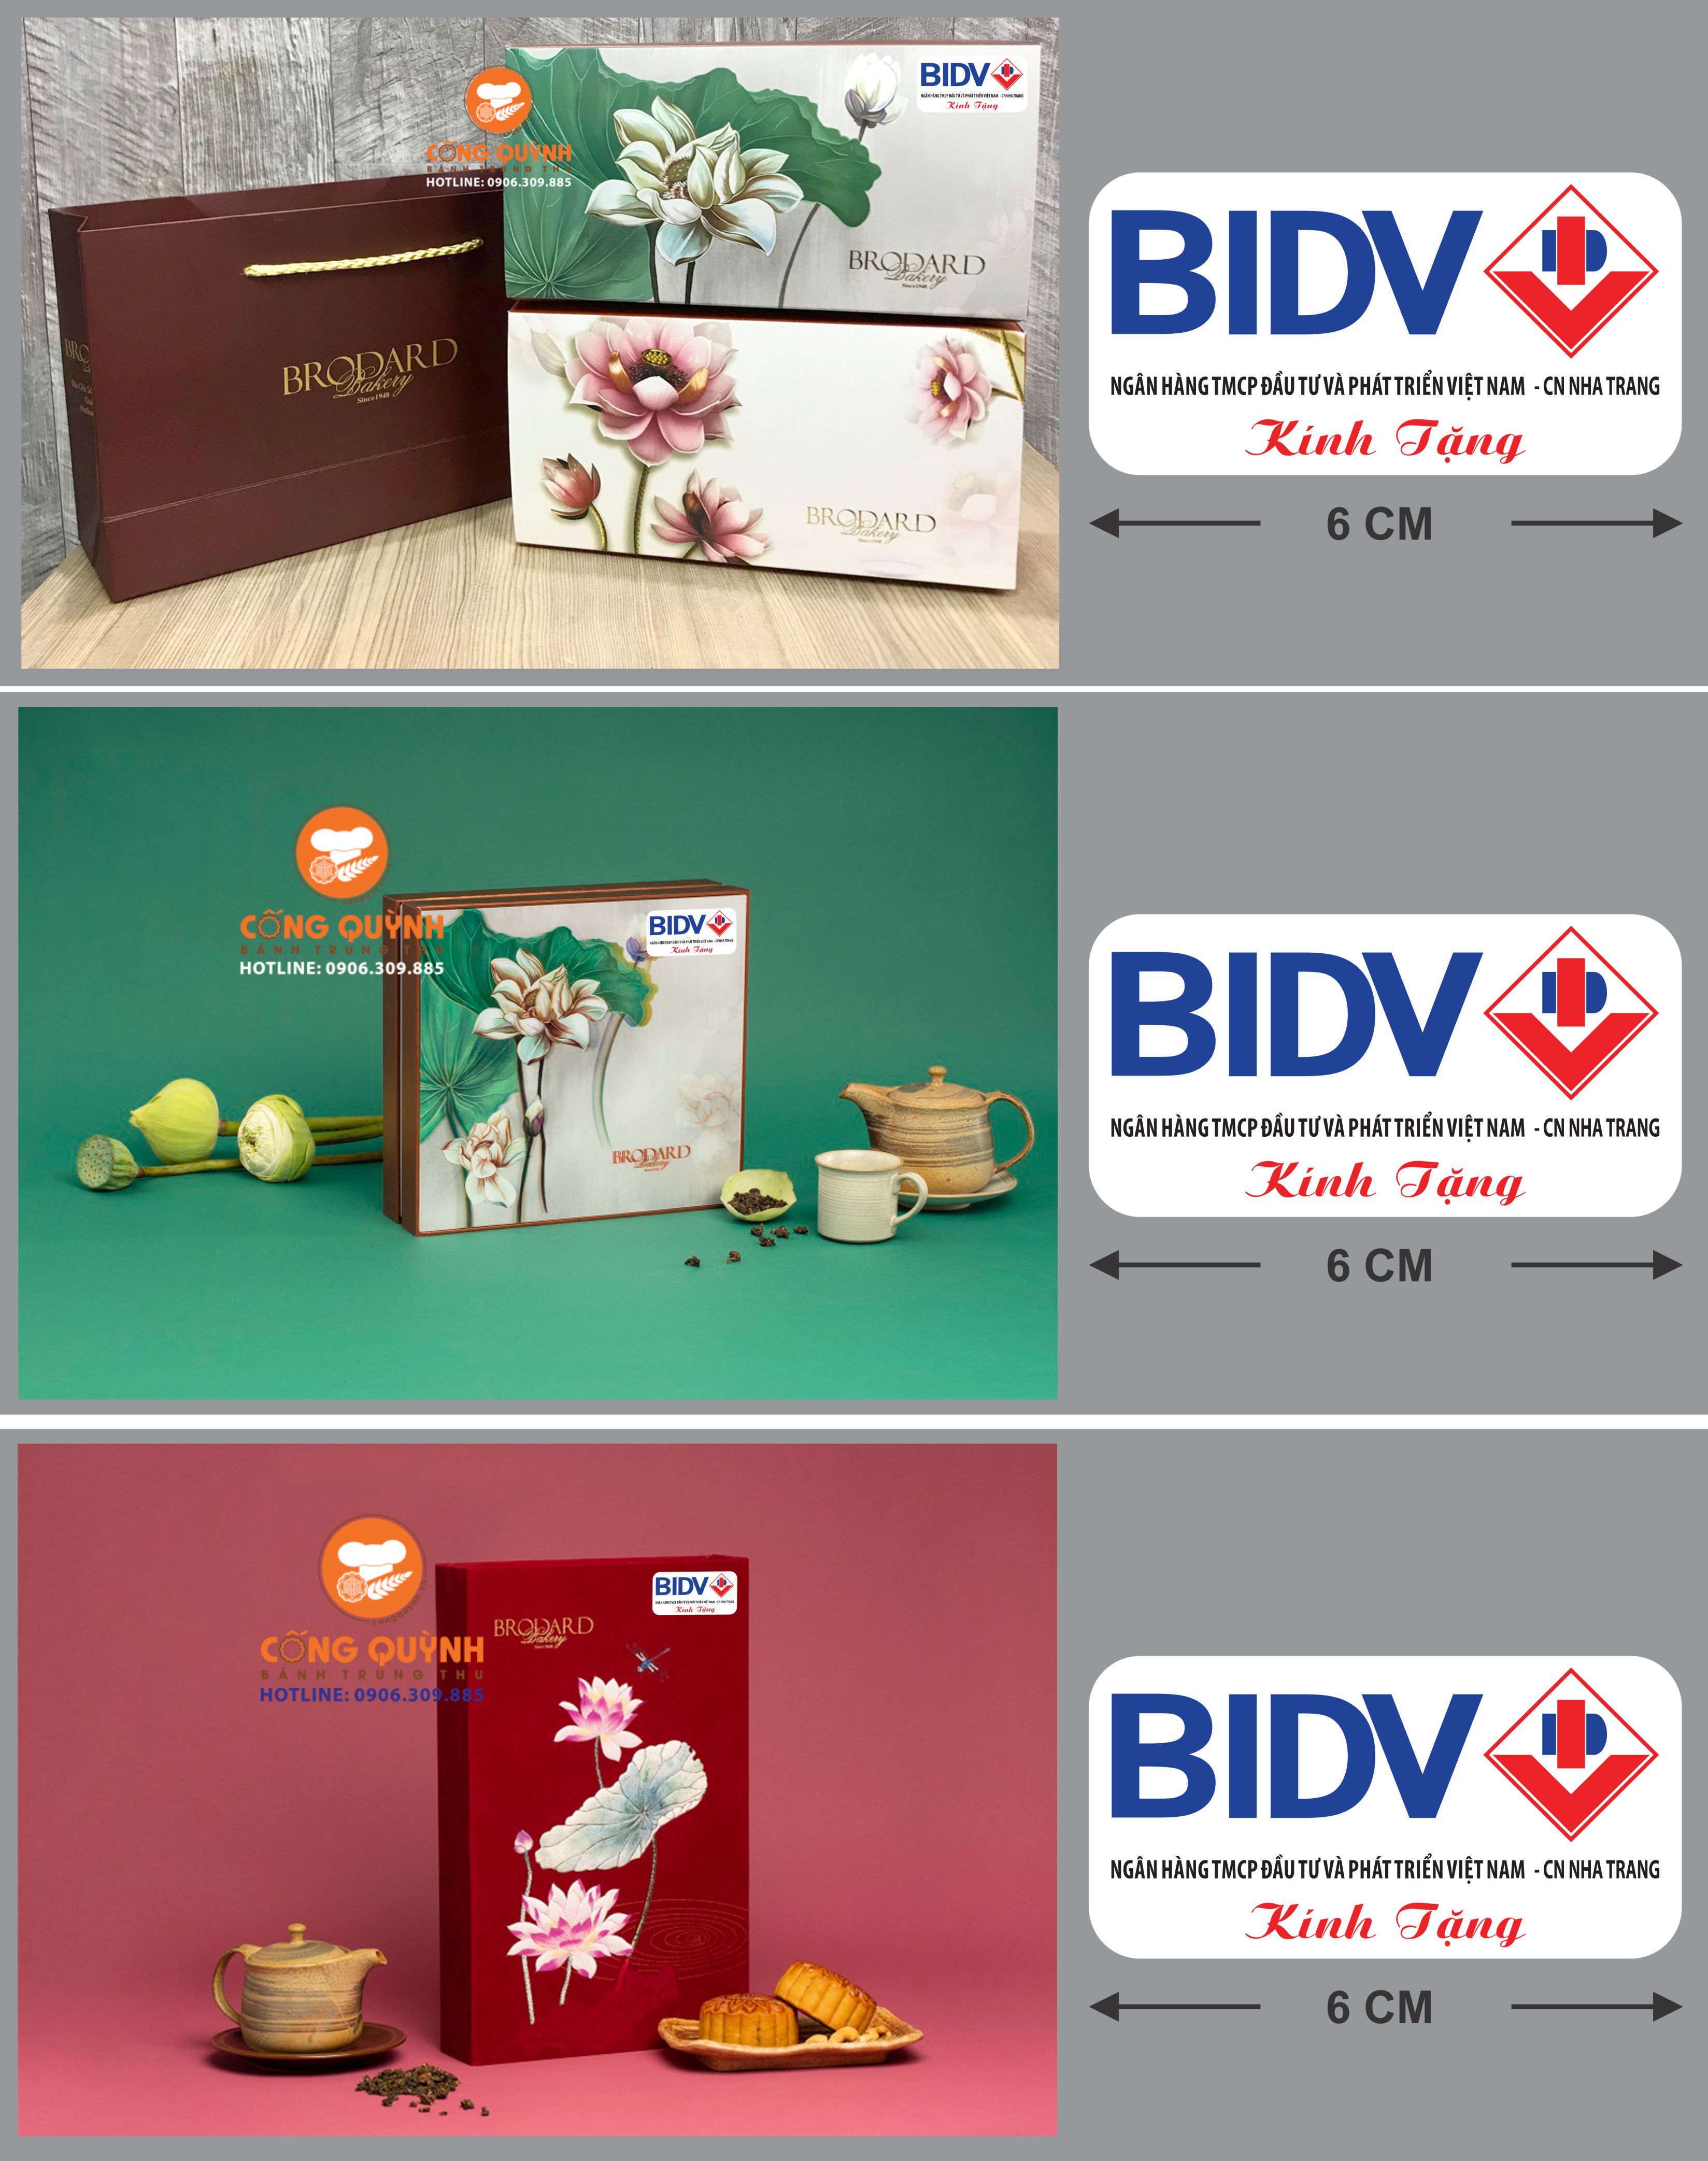 đơn hàng bánh trung thu in logo bidv